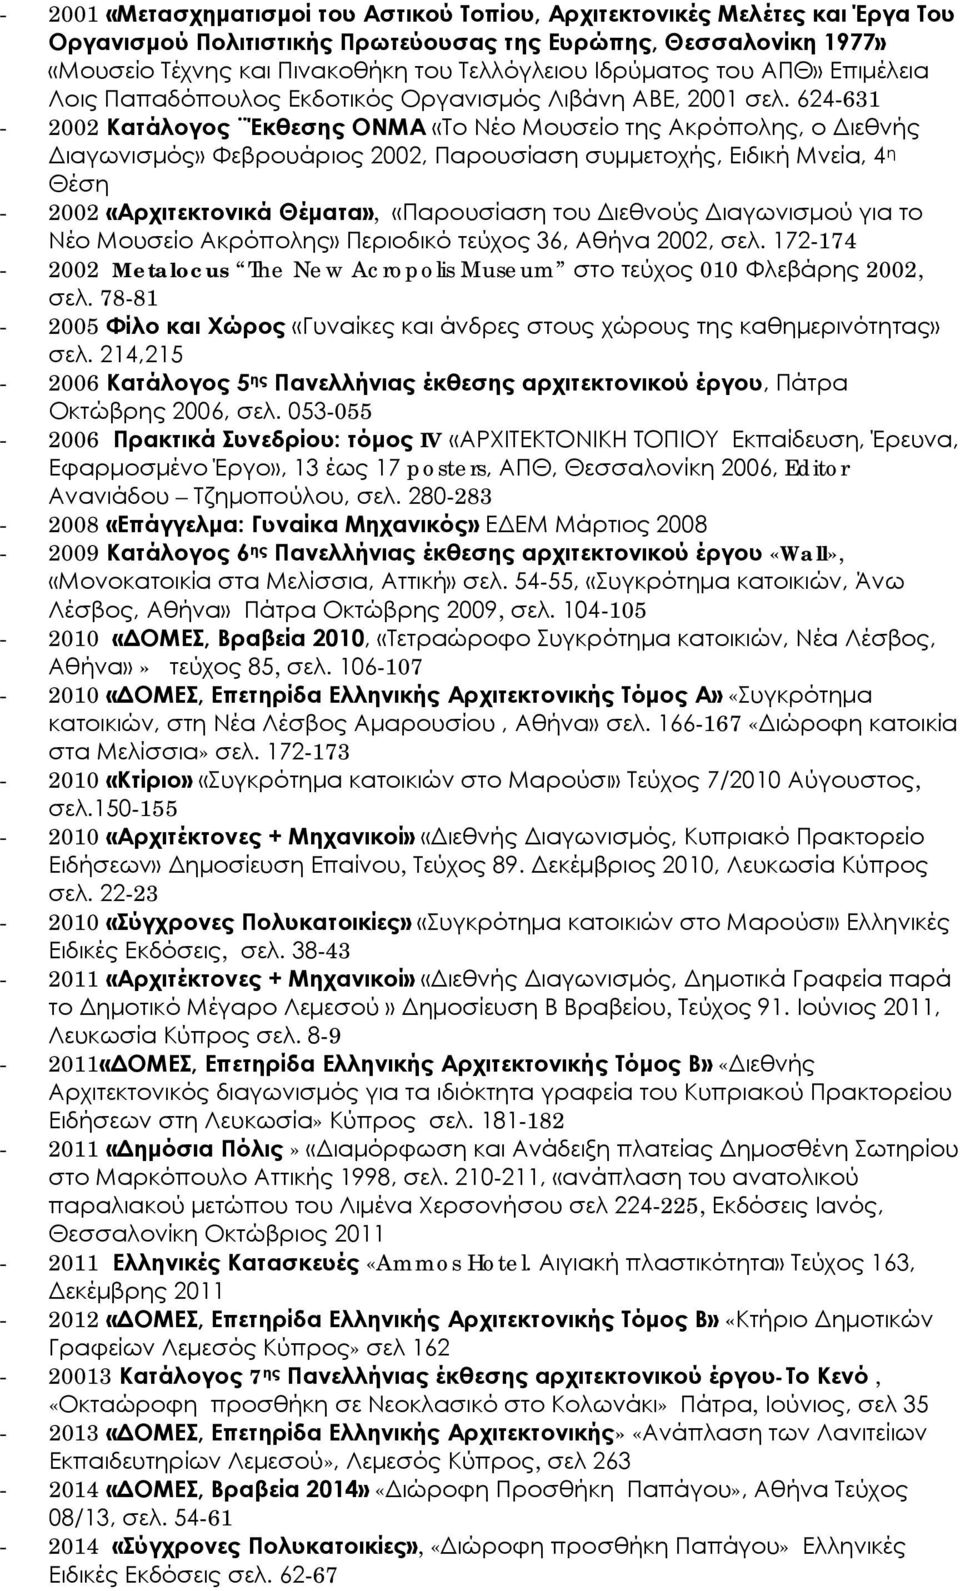 624-631 - 2002 Κατάλογος Έκθεσης ΟΝΜΑ «Το Νέο Μουσείο της Ακρόπολης, ο Διεθνής Διαγωνισμός» Φεβρουάριος 2002, Παρουσίαση συμμετοχής, Ειδική Μνεία, 4 η Θέση - 2002 «Αρχιτεκτονικά Θέματα», «Παρουσίαση